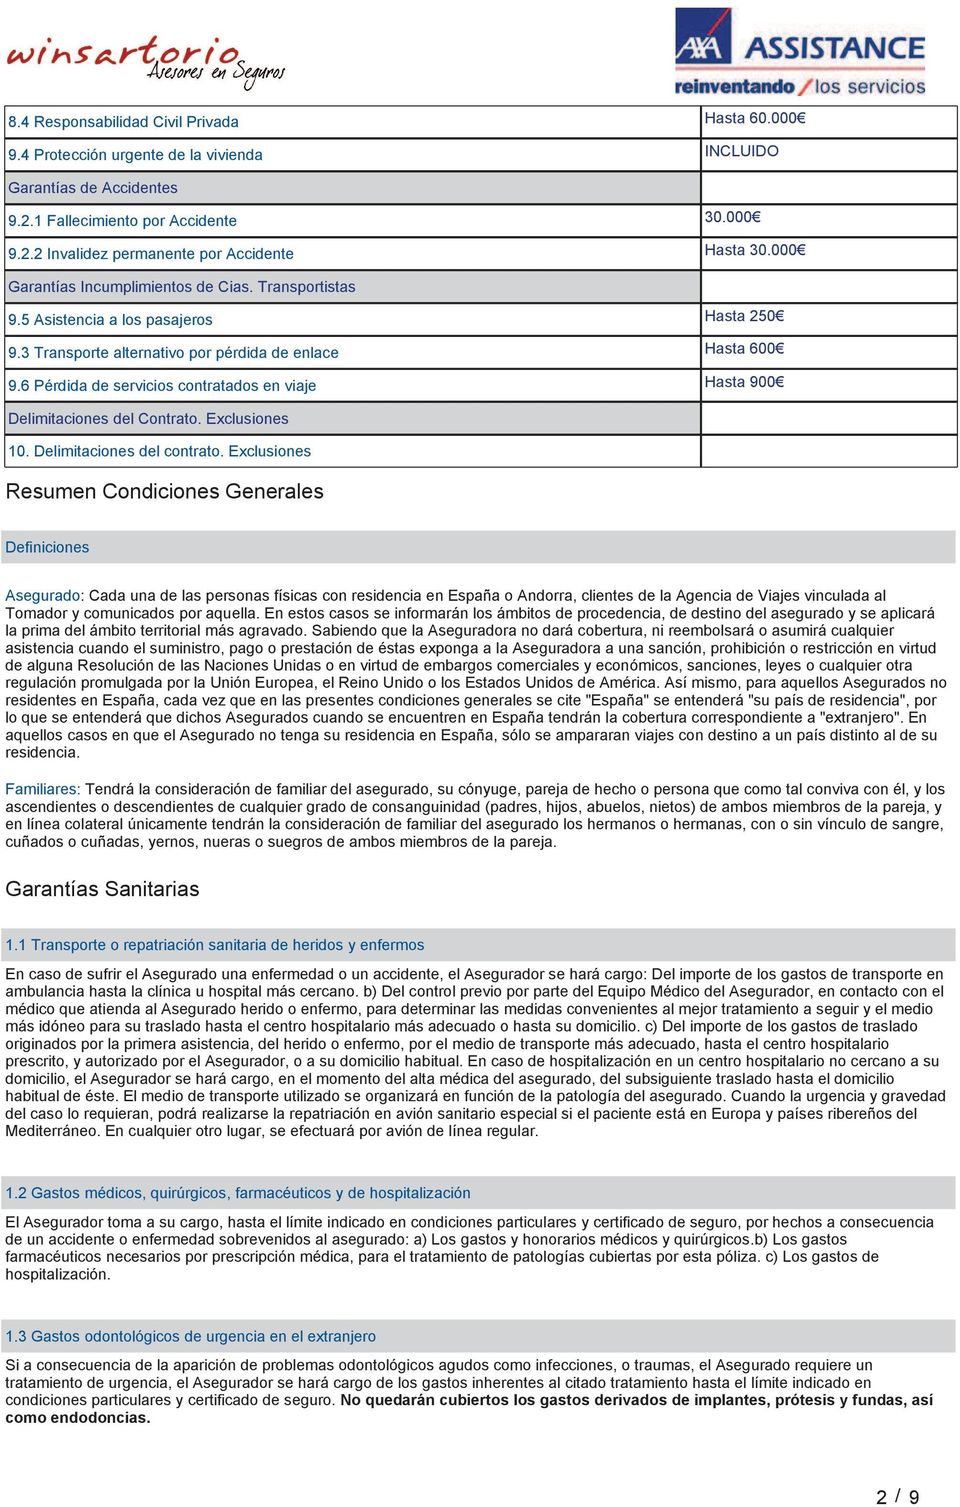 6 Pérdida de servicios contratados en viaje Hasta 900 Delimitaciones del Contrato. Exclusiones 10. Delimitaciones del contrato.